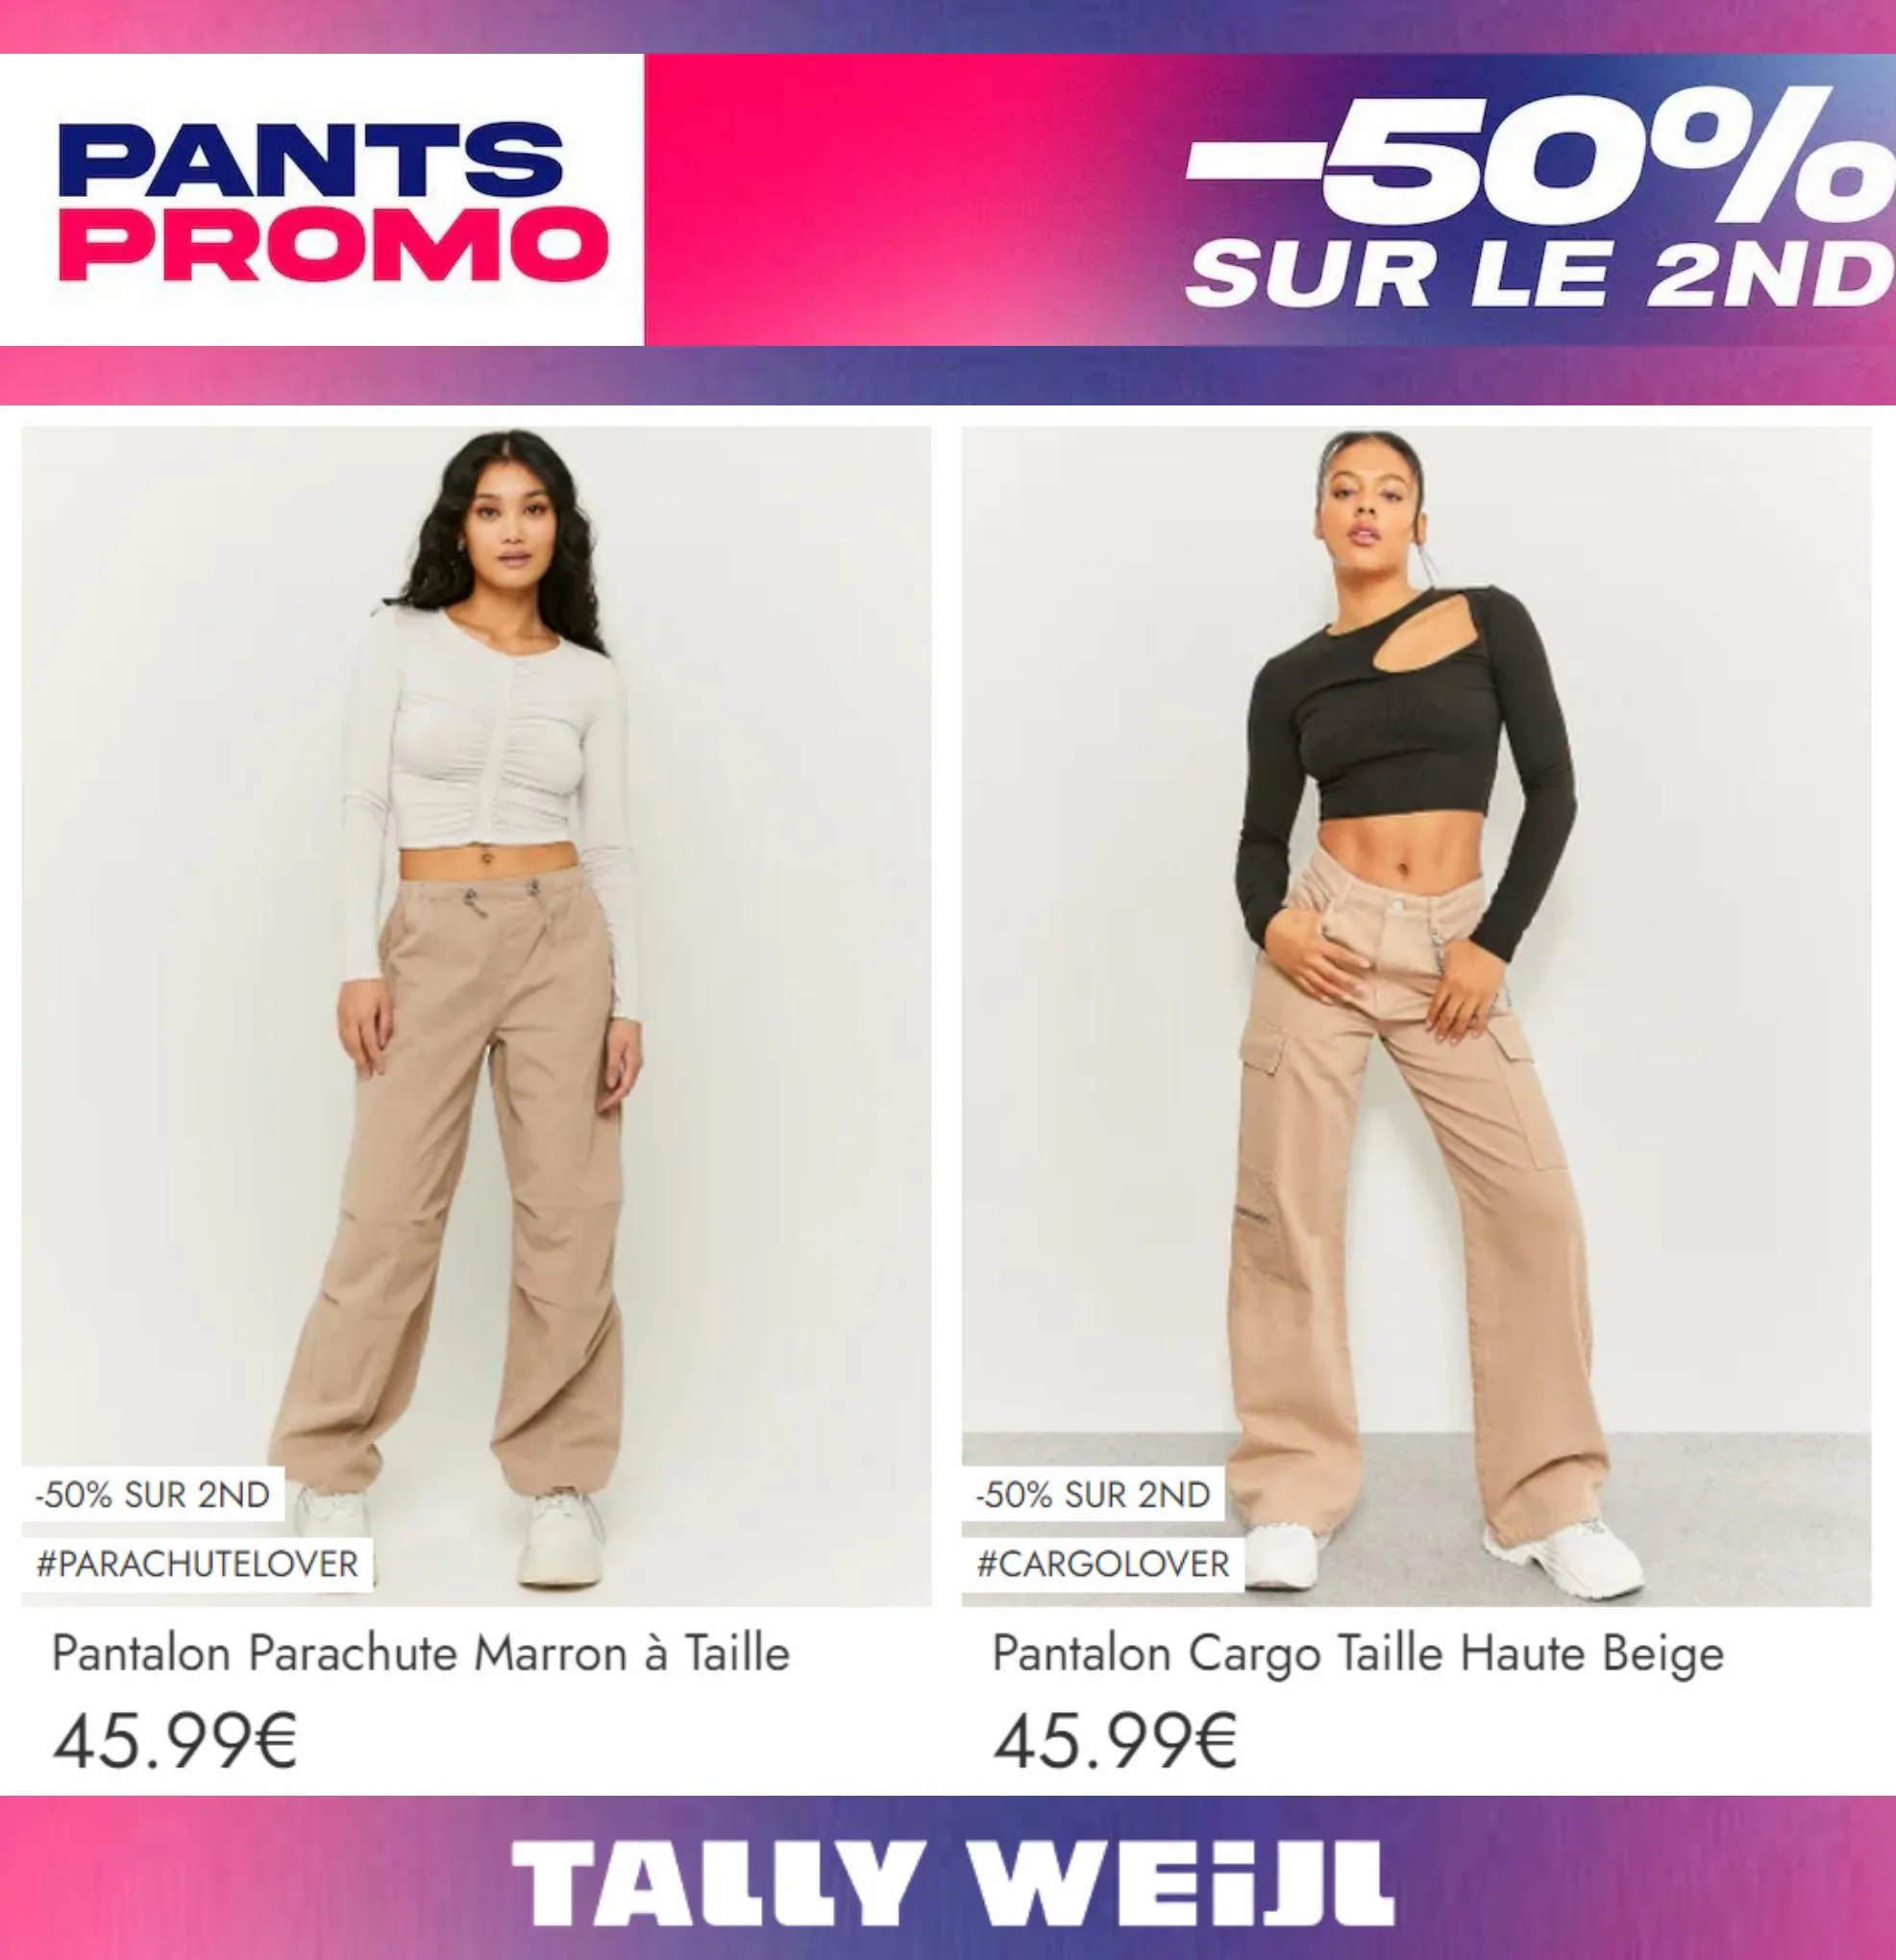 Catalogue Pants Promo -50% sur le 2nd*, page 00004